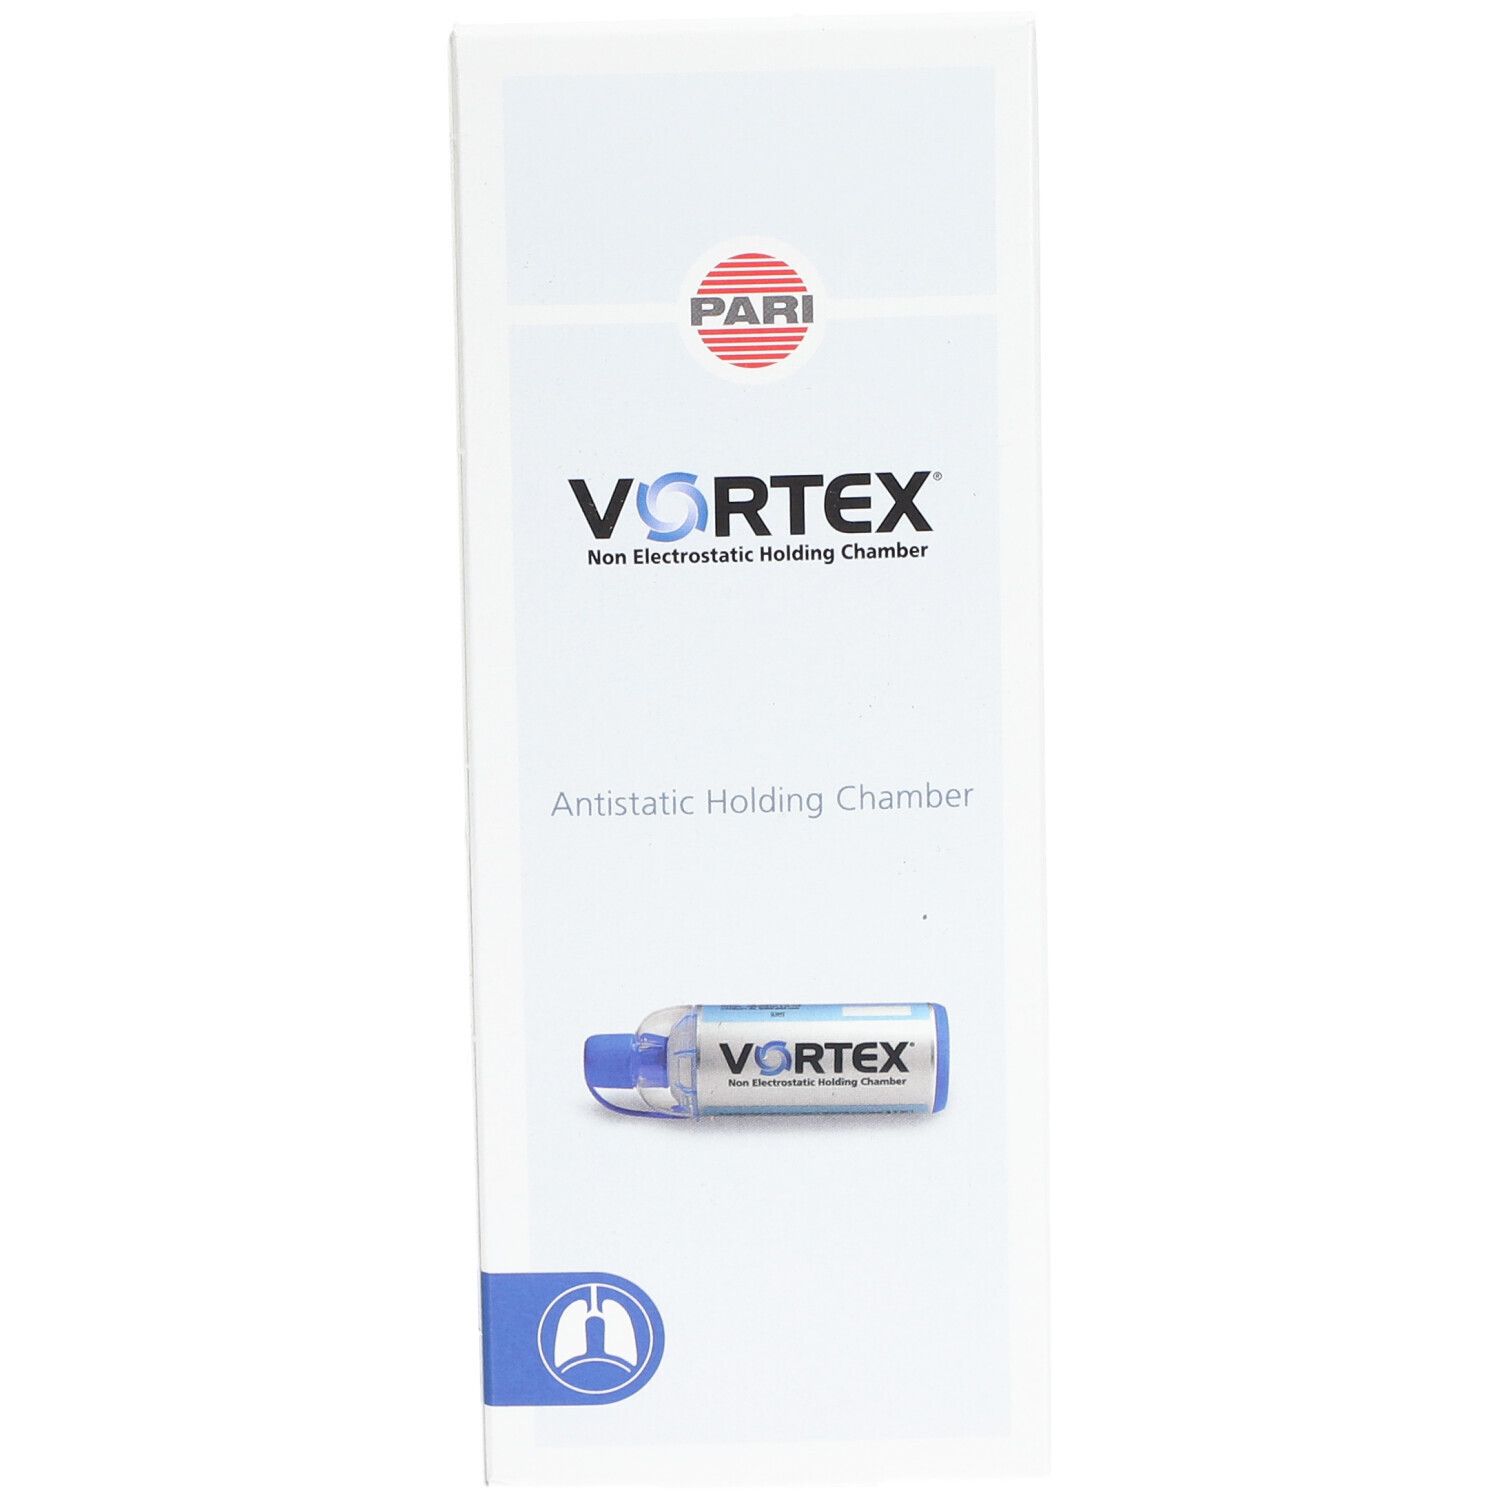 VORTEX® Inhalierhilfe ab 4 Jahren